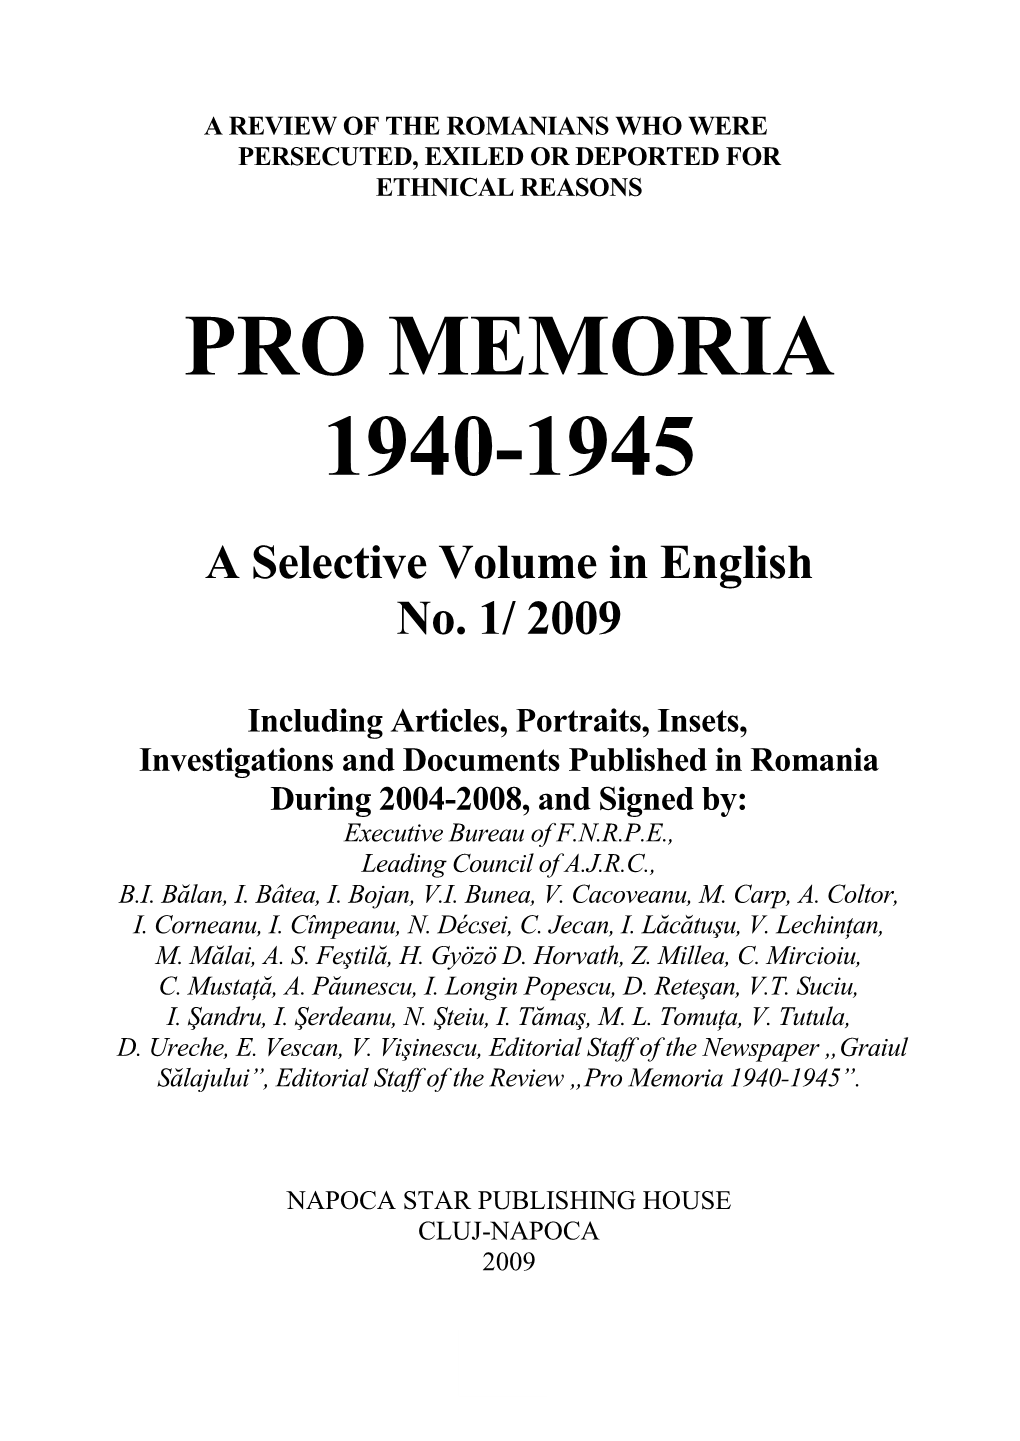 Pro Memoria 1940-1945